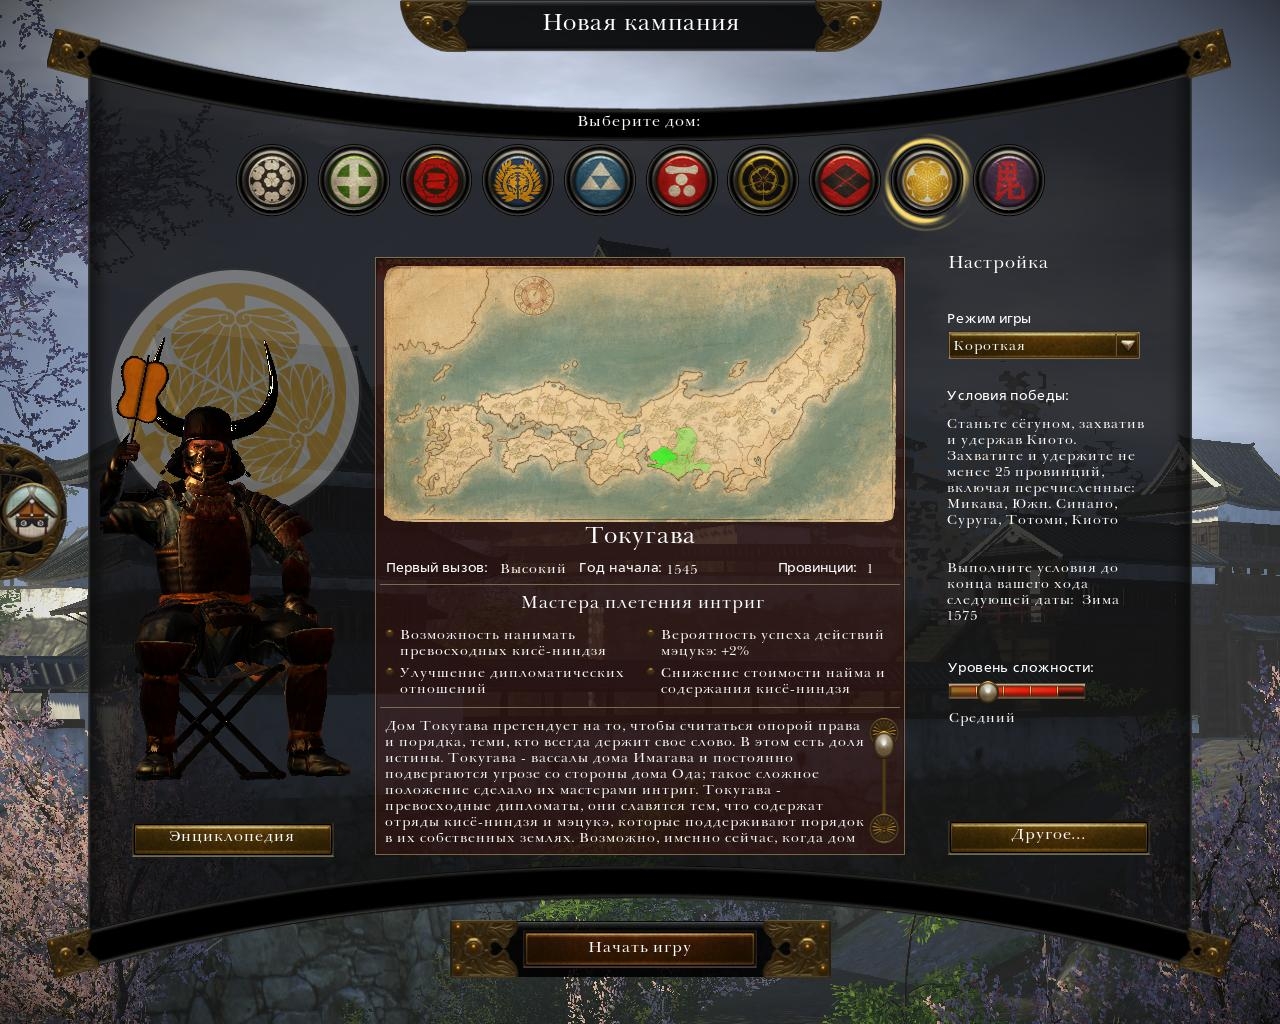 Скриншот из игры Total War: Shogun 2 под номером 33